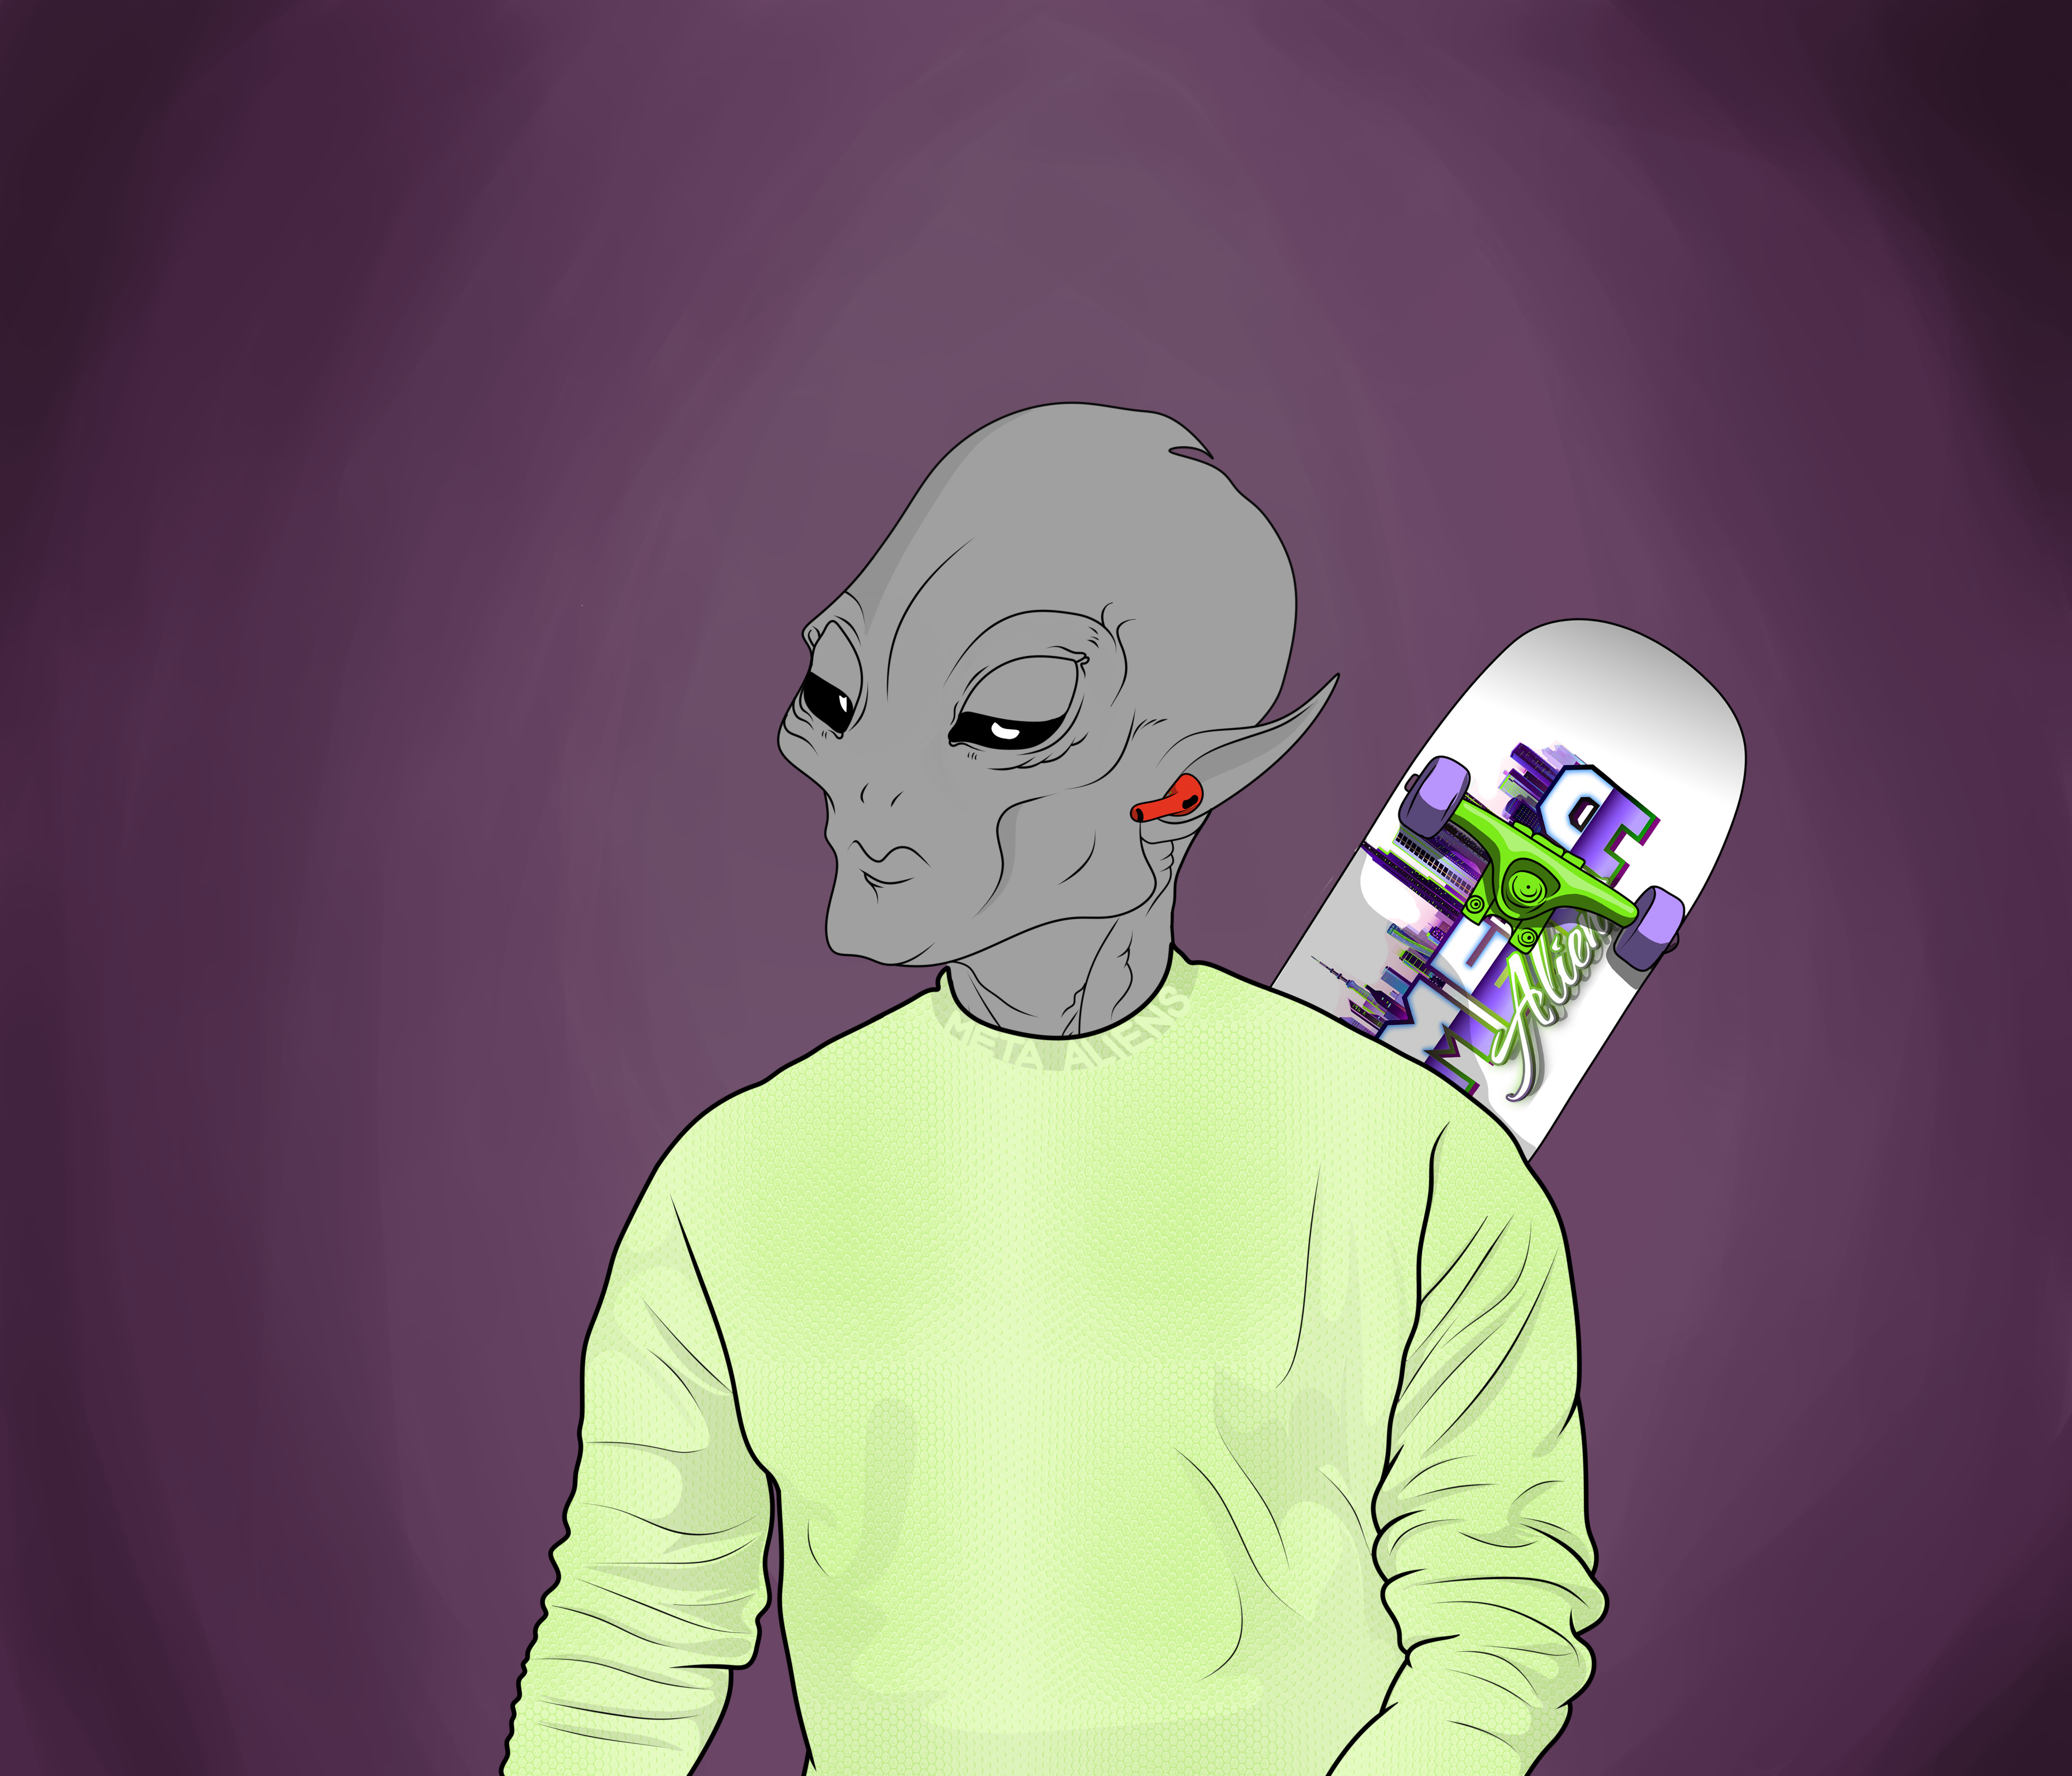 Meta Alien #3